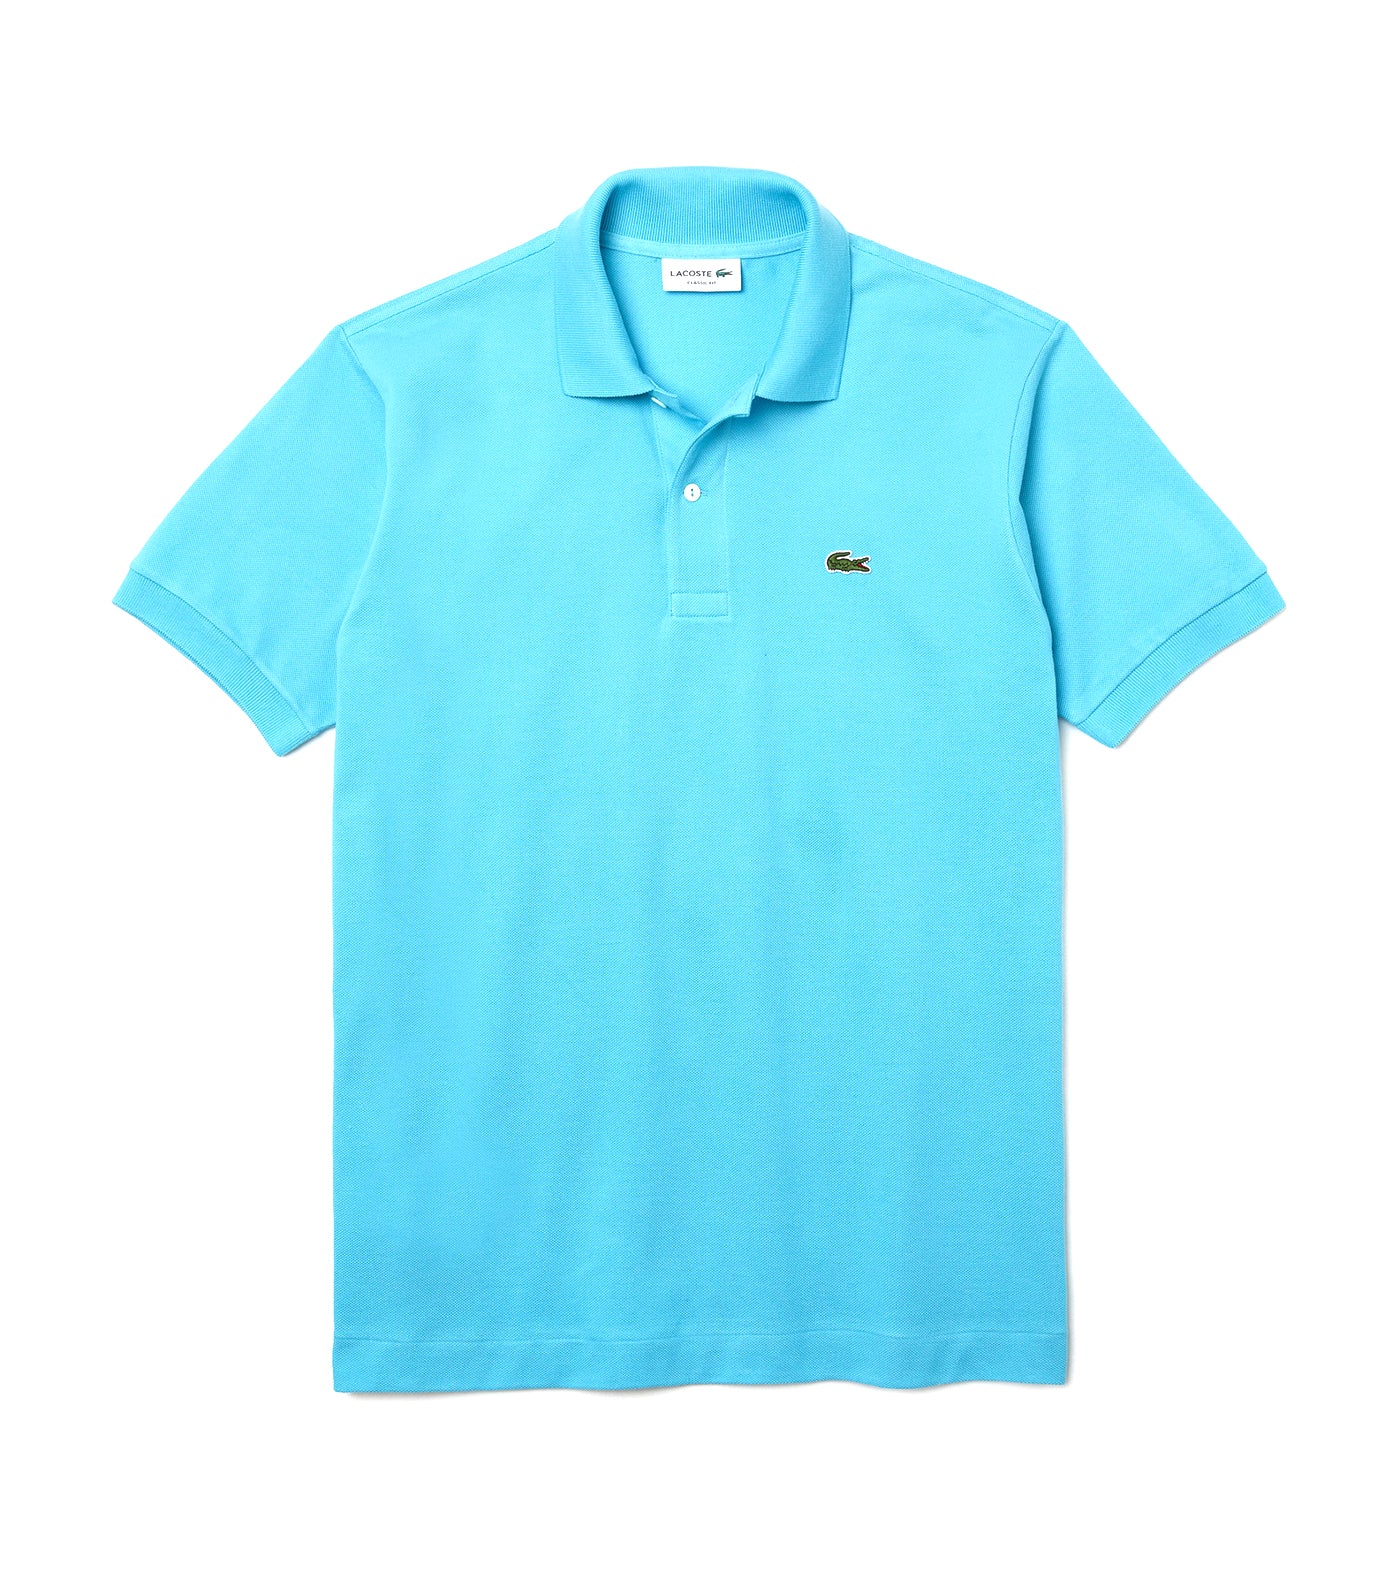 Men's Classic Fit L.12.12 Polo Shirt Azure Blue